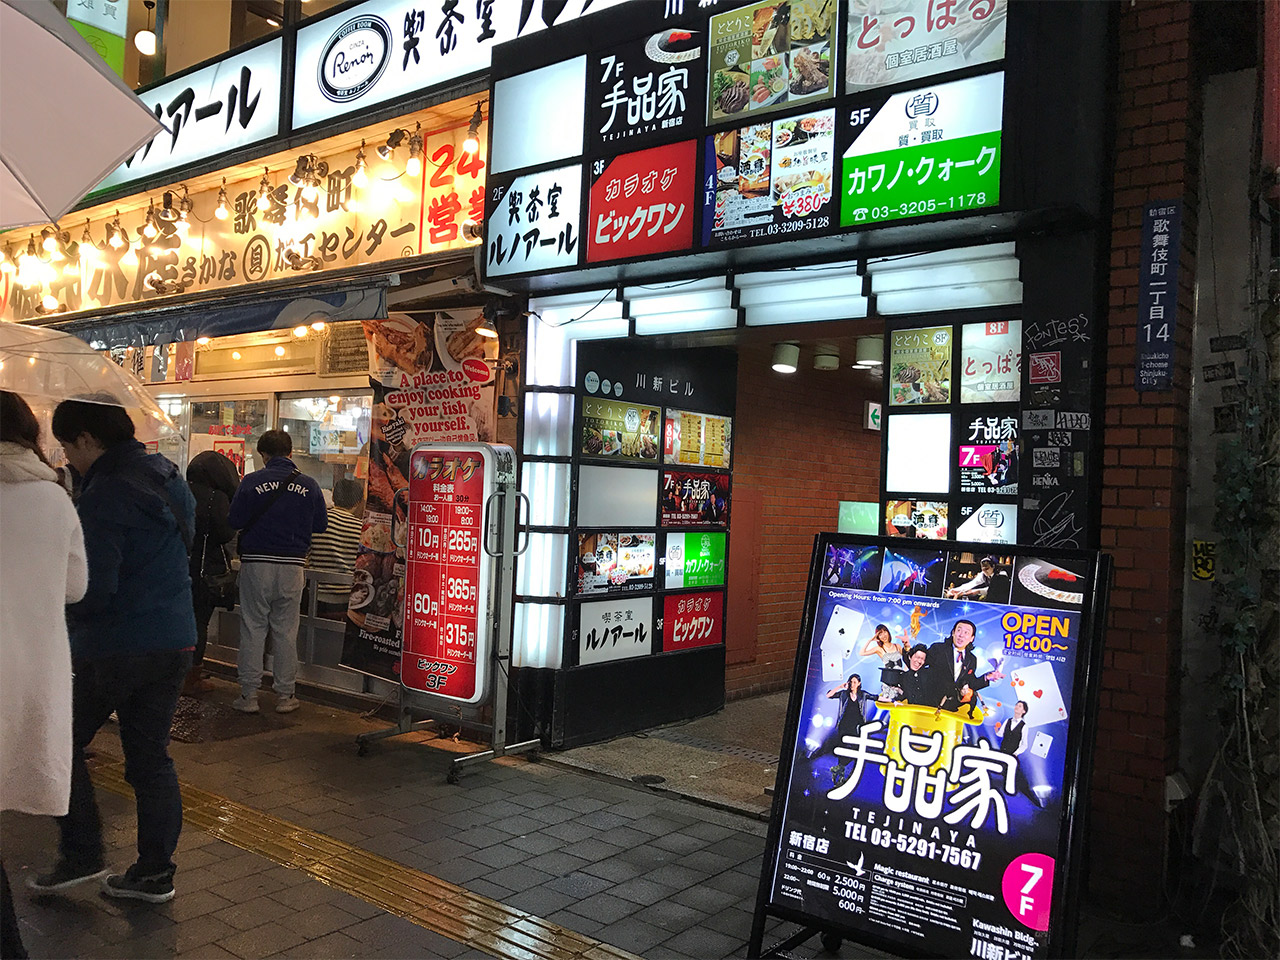 新宿歌舞伎町にあるマジックバー 手品家 で生のマジックを初体験 思ってたよりめちゃめちゃ面白かった ディレイマニア